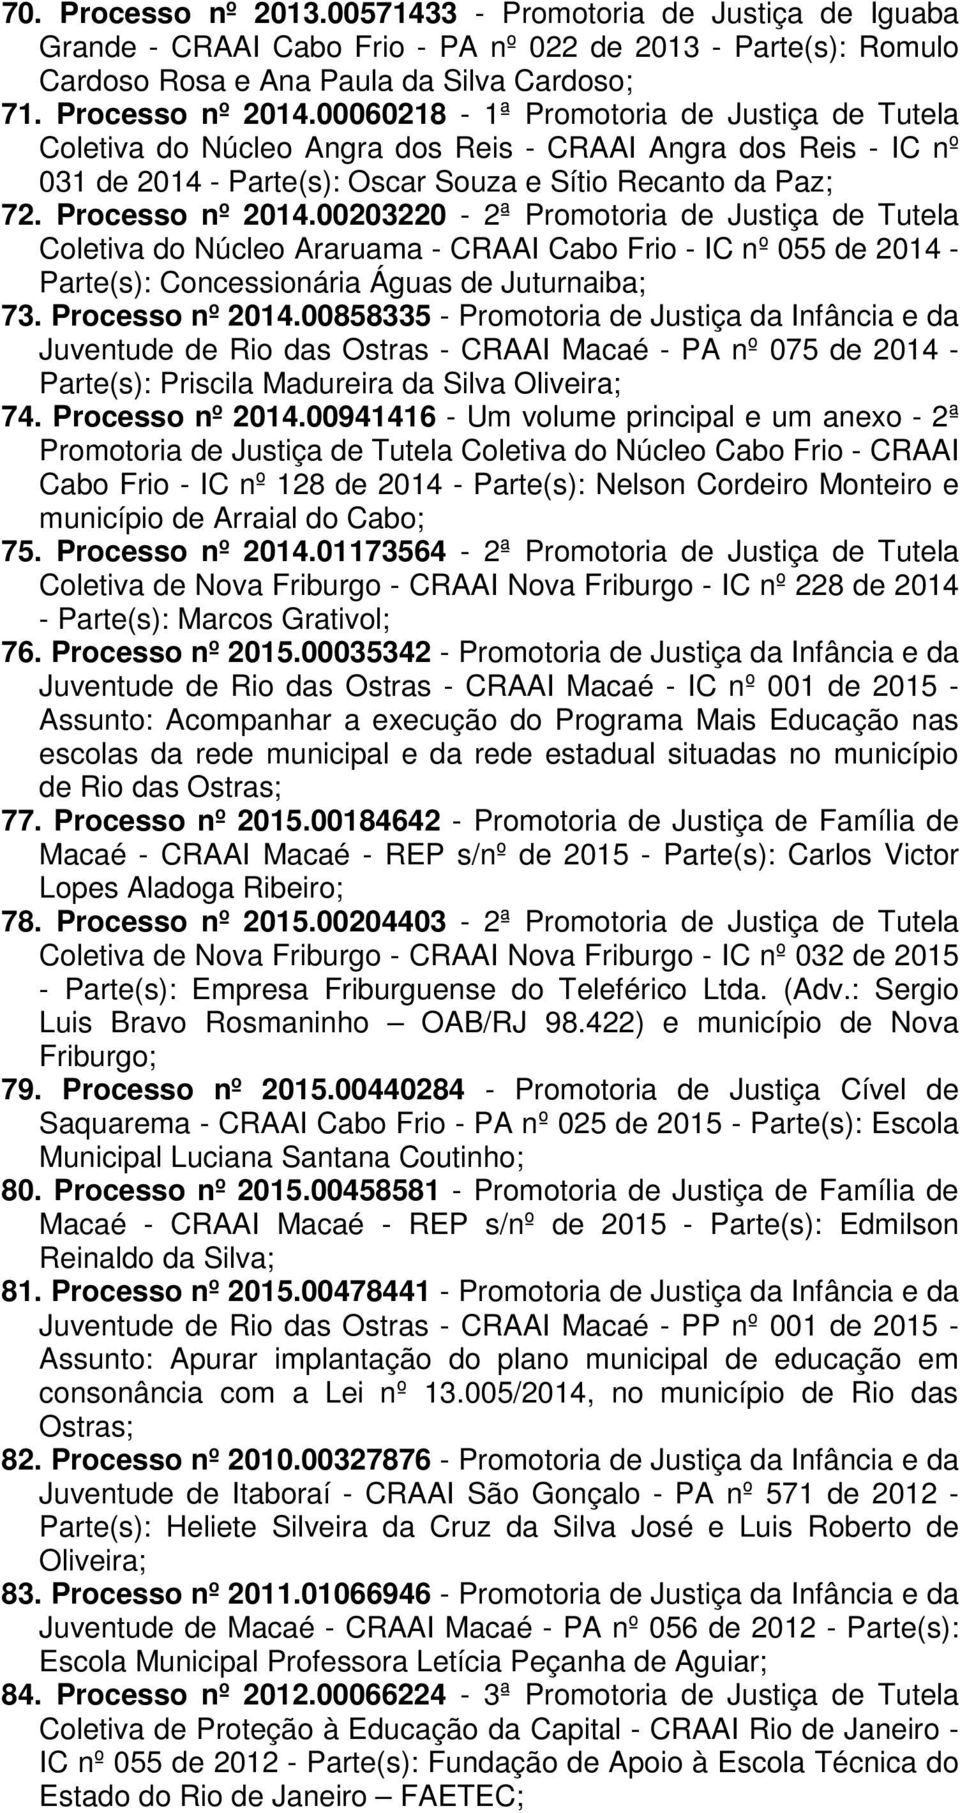 00203220-2ª Promotoria de Justiça de Tutela Coletiva do Núcleo Araruama - CRAAI Cabo Frio - IC nº 055 de 2014 - Parte(s): Concessionária Águas de Juturnaiba; 73. Processo nº 2014.